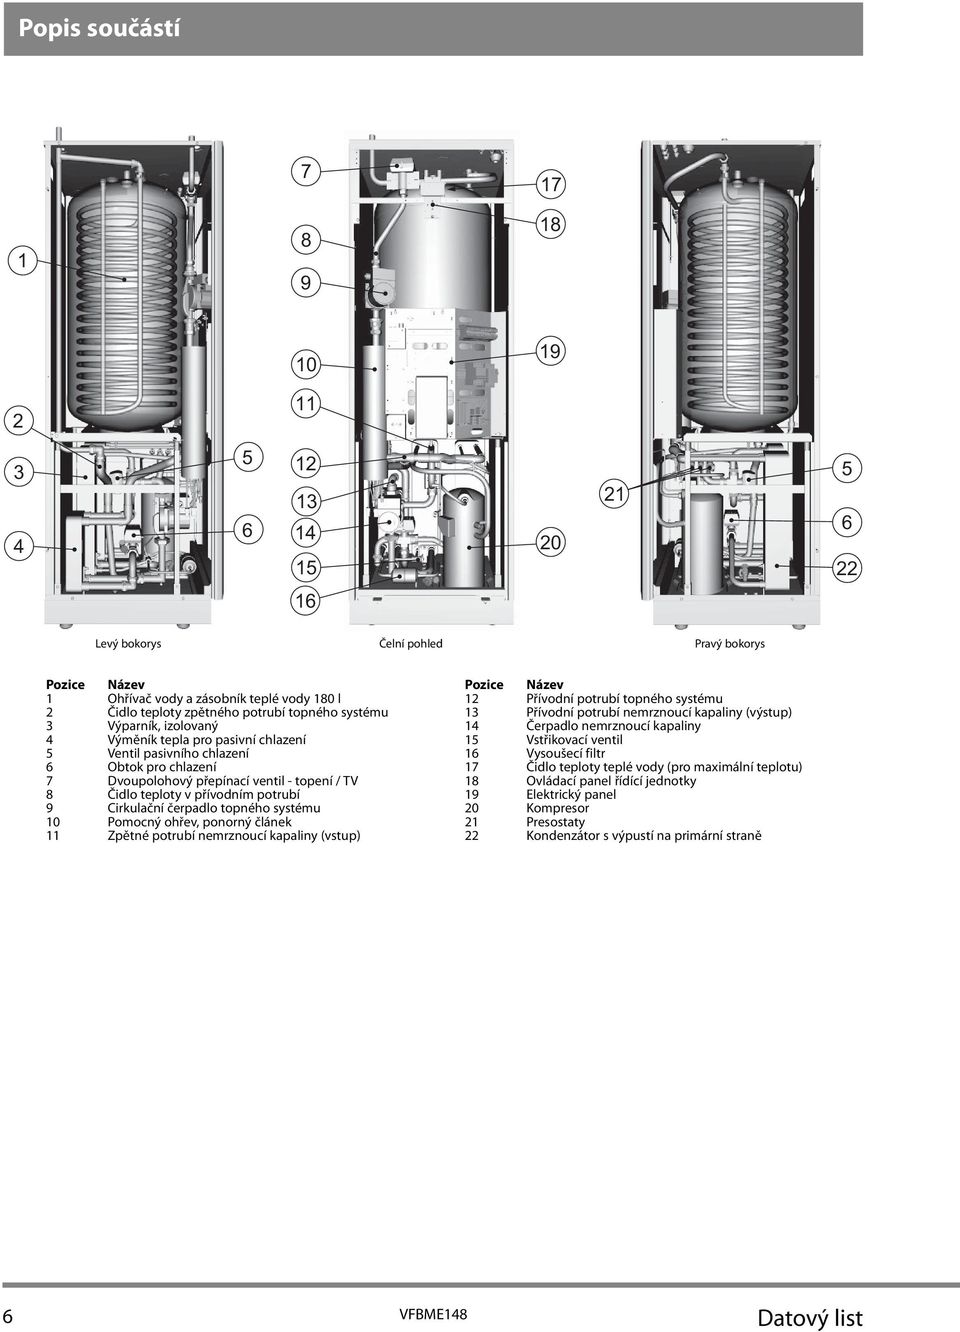 potrubí 9 irkulační čerpadlo topného systému 10 Pomocný ohřev, ponorný článek 11 Zpětné potrubí nemrznoucí kapaliny (vstup) Pozice Název 12 Přívodní potrubí topného systému 13 Přívodní potrubí